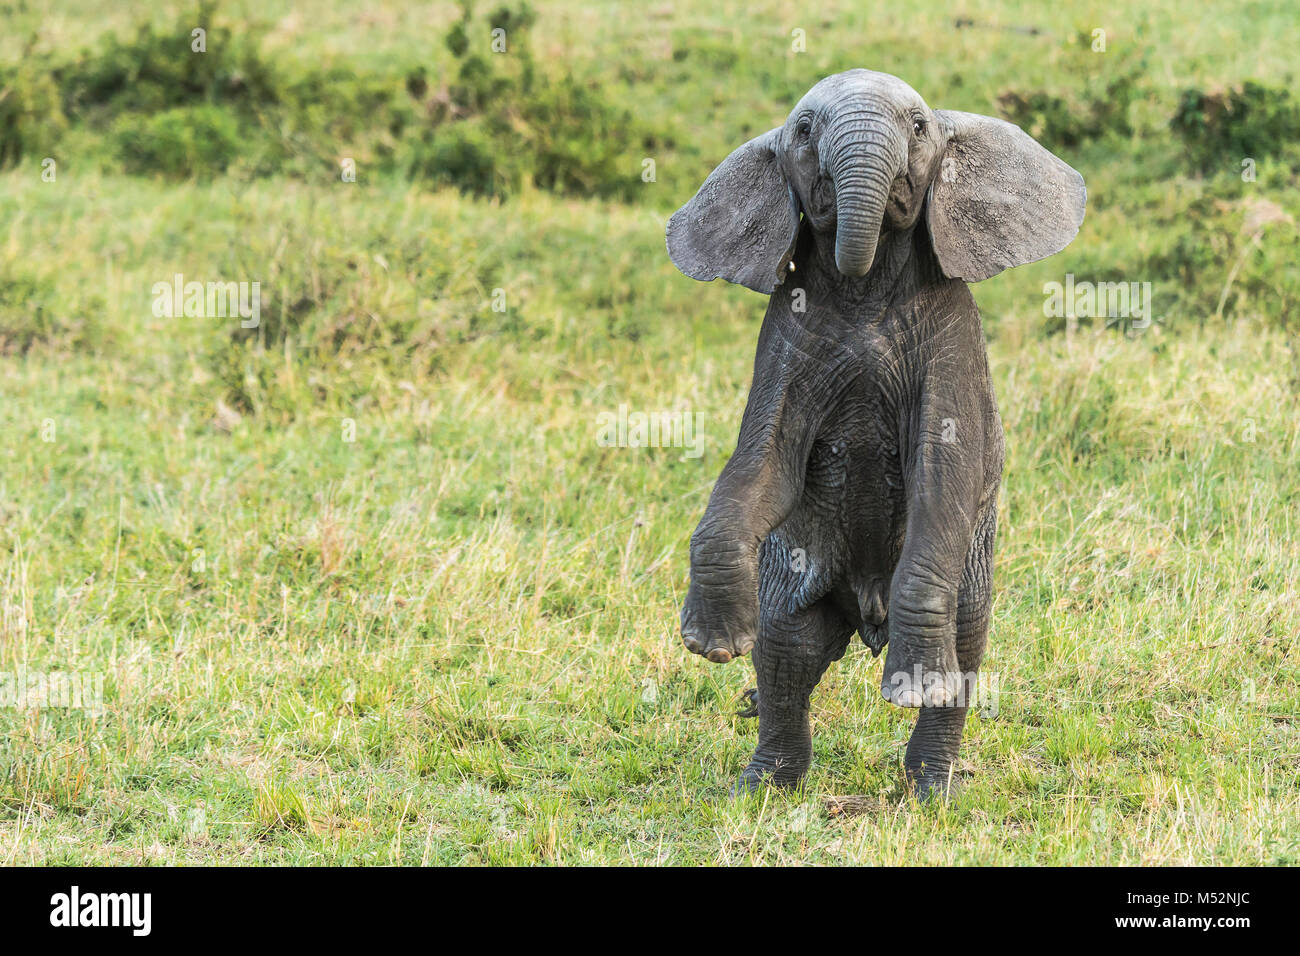 Ein Elefant Kalb bäumt sich auf seinen Hinterbeinen in einer Bedrohung der Körperhaltung. Masai Mara National Reserve, Kenia. Stockfoto